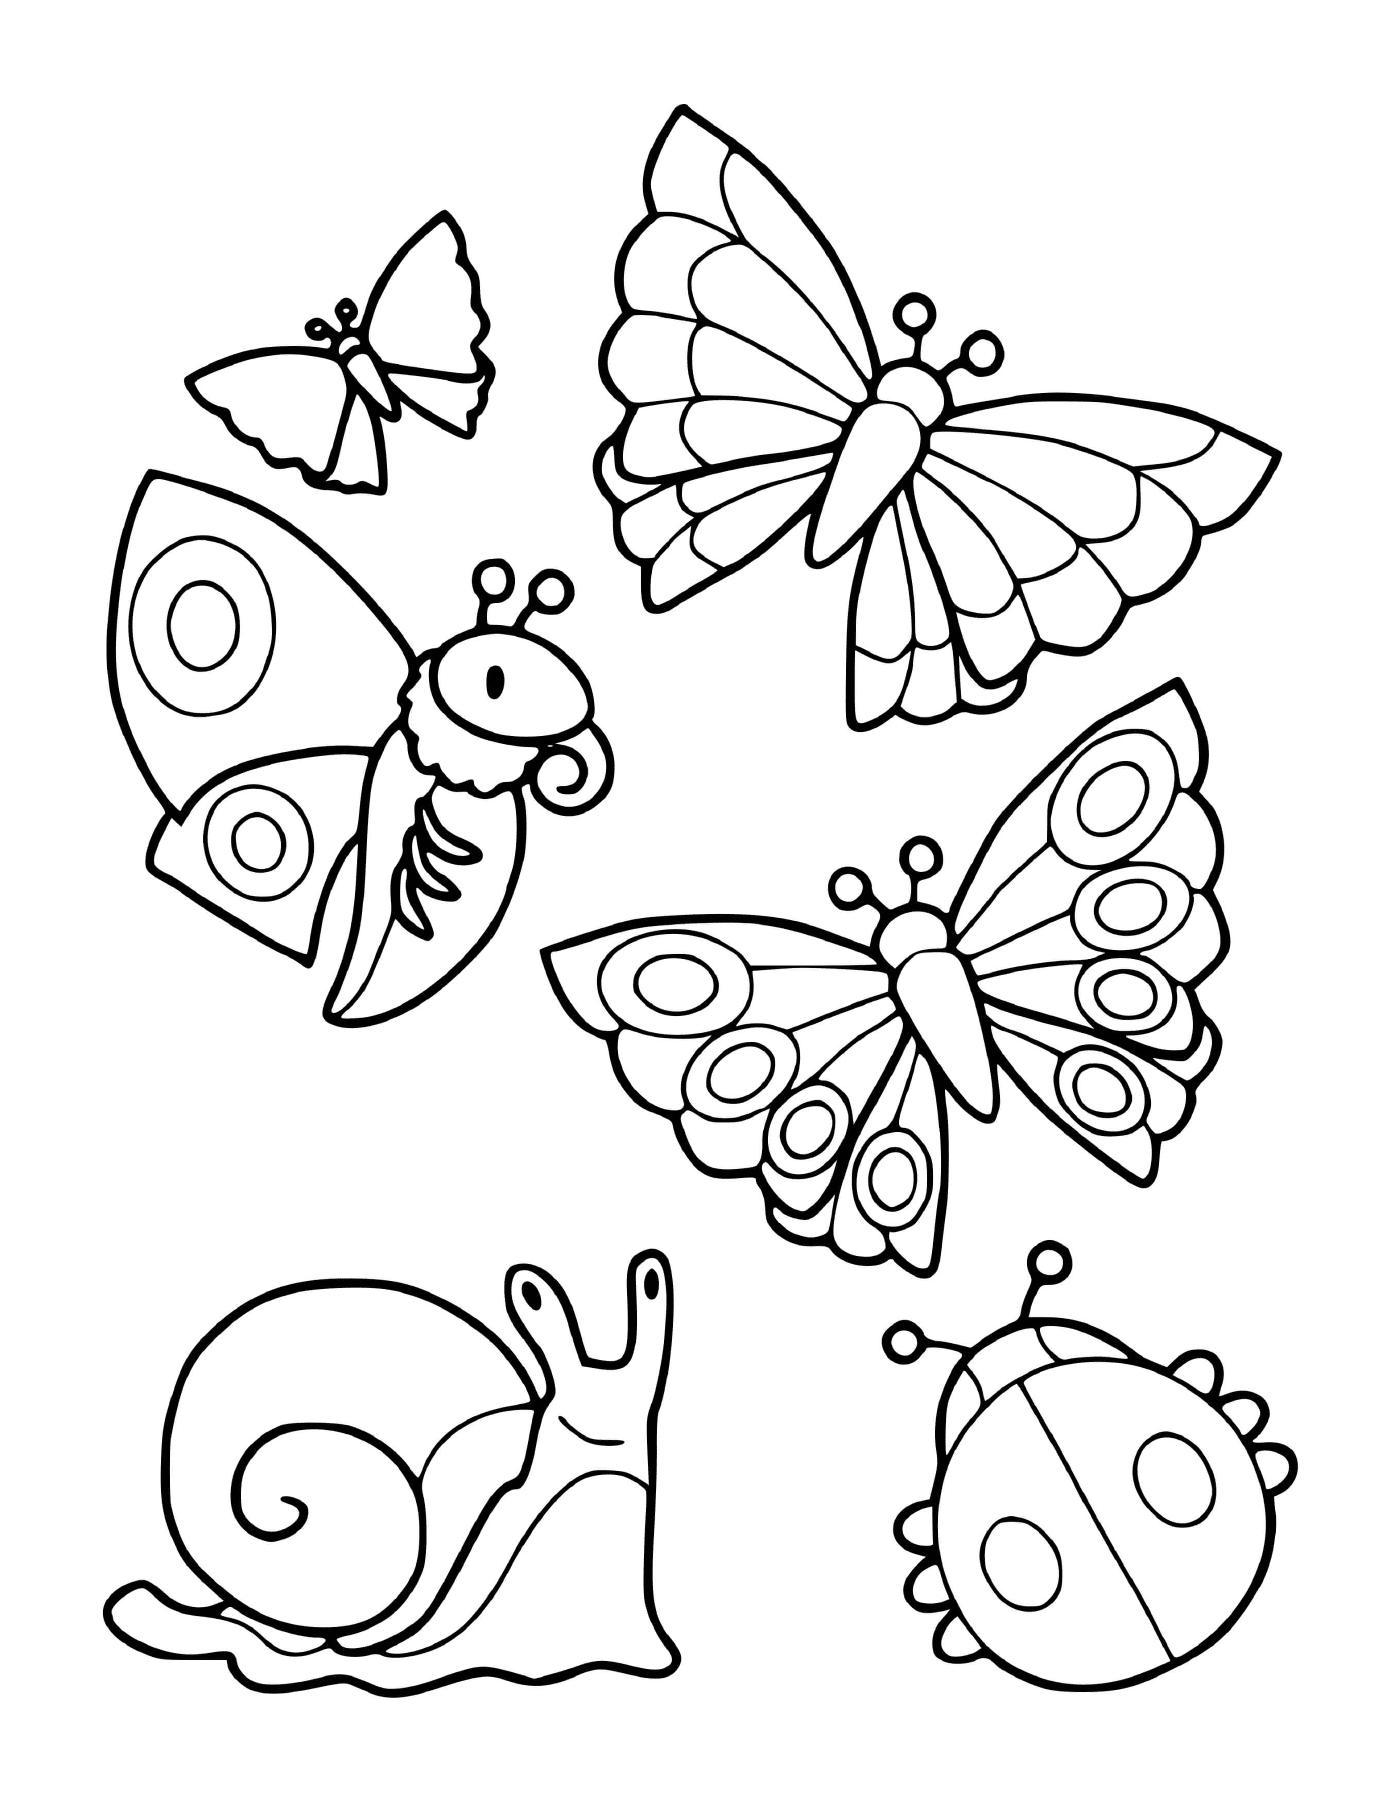  包括蝴蝶和蜗牛在内的昆虫群 